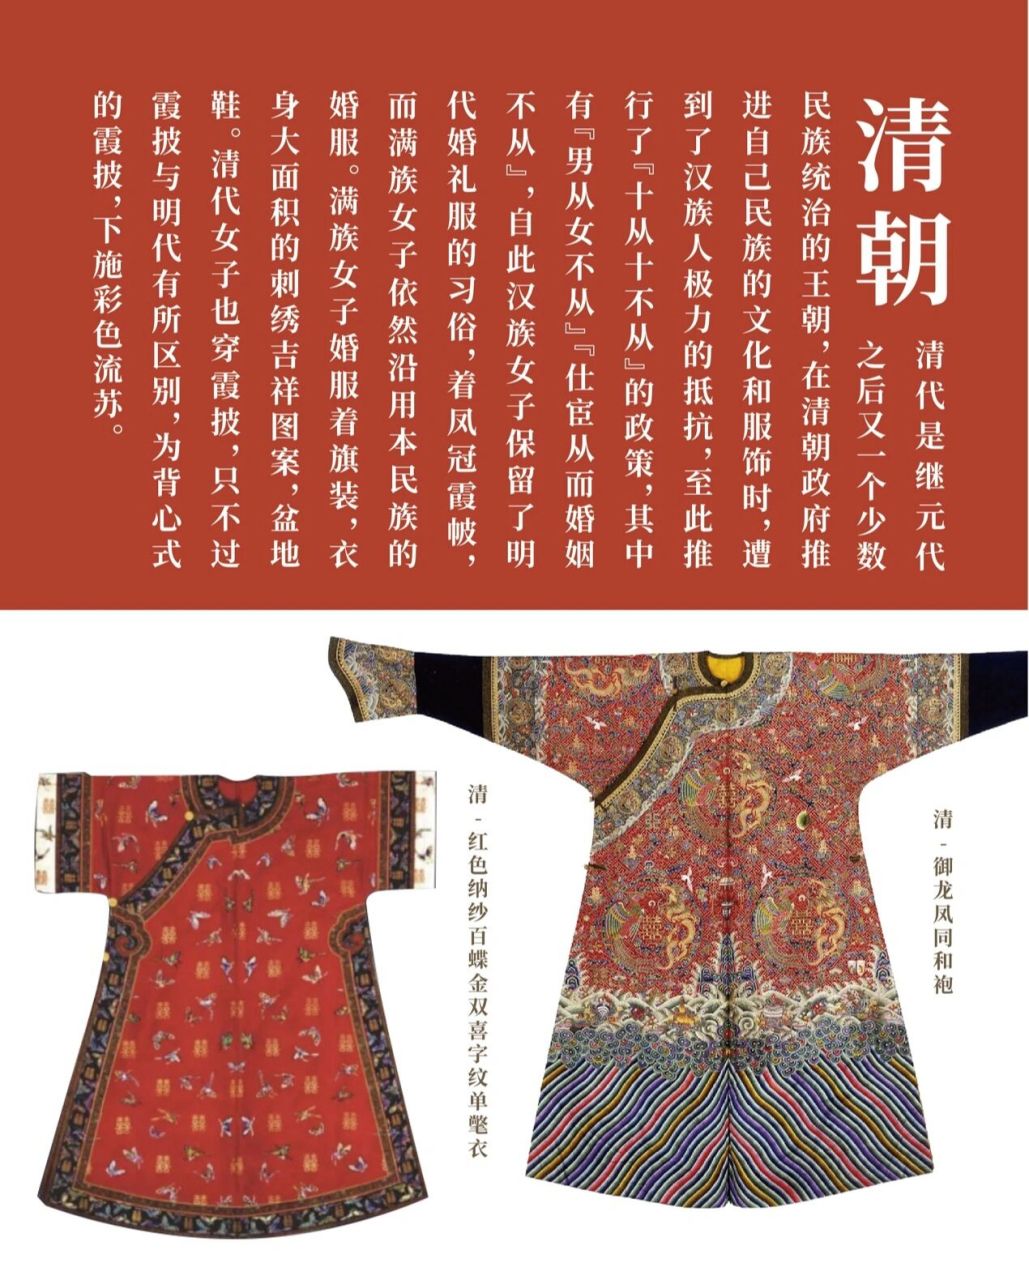 (下) 97宋朝 宋代的婚礼服已经具有明制婚服的雏形,审美观念与唐朝